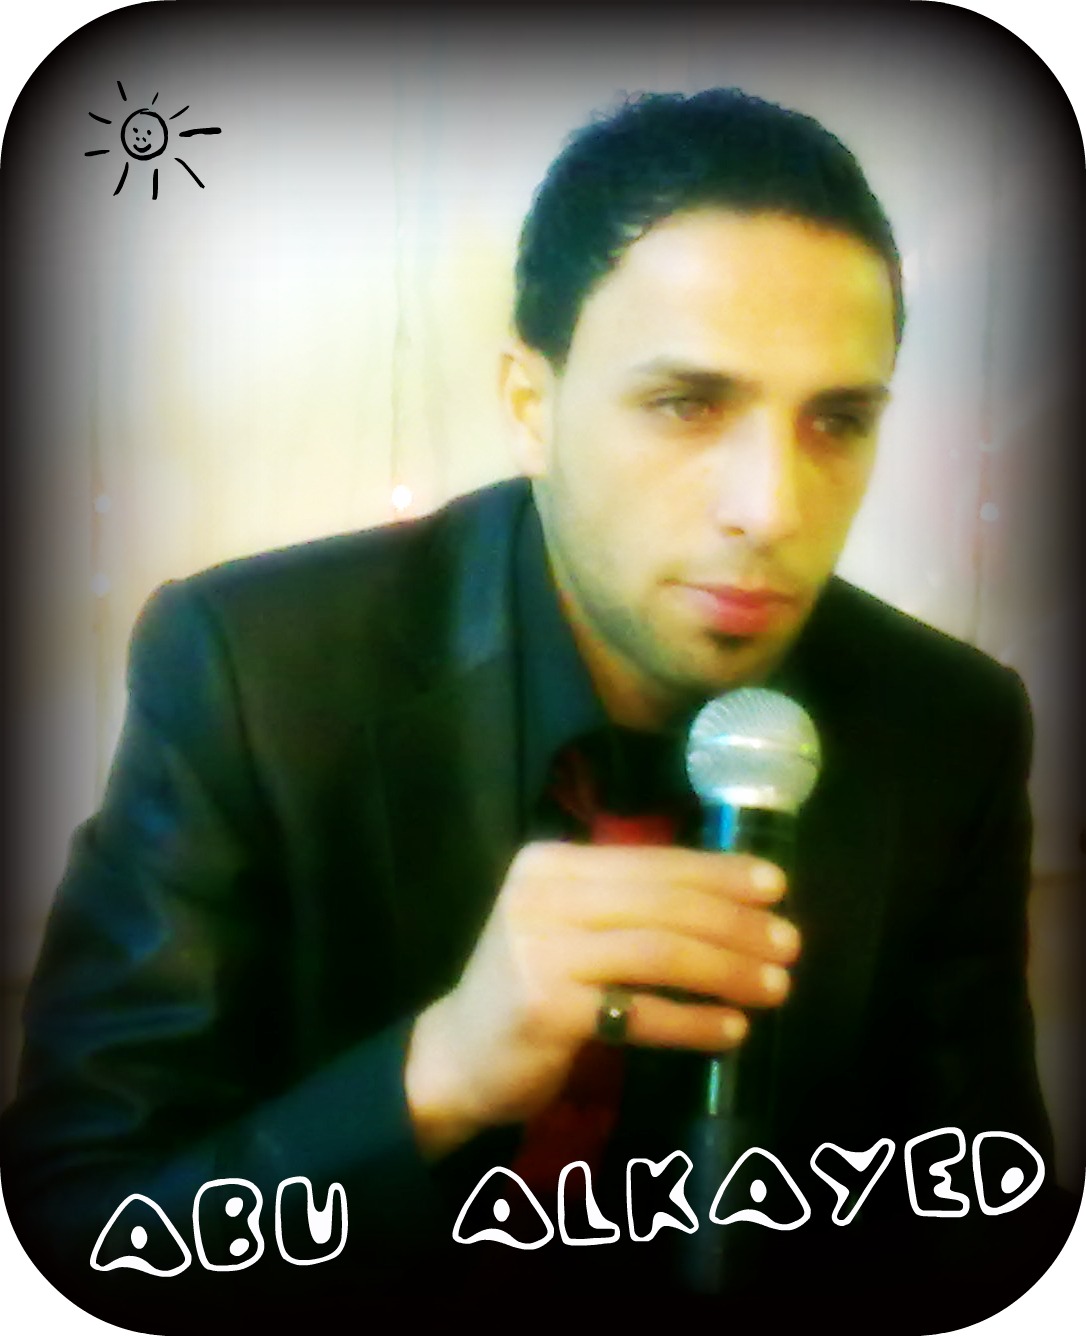  - mohamed-abou-el-kayed-1769-31675-3295714